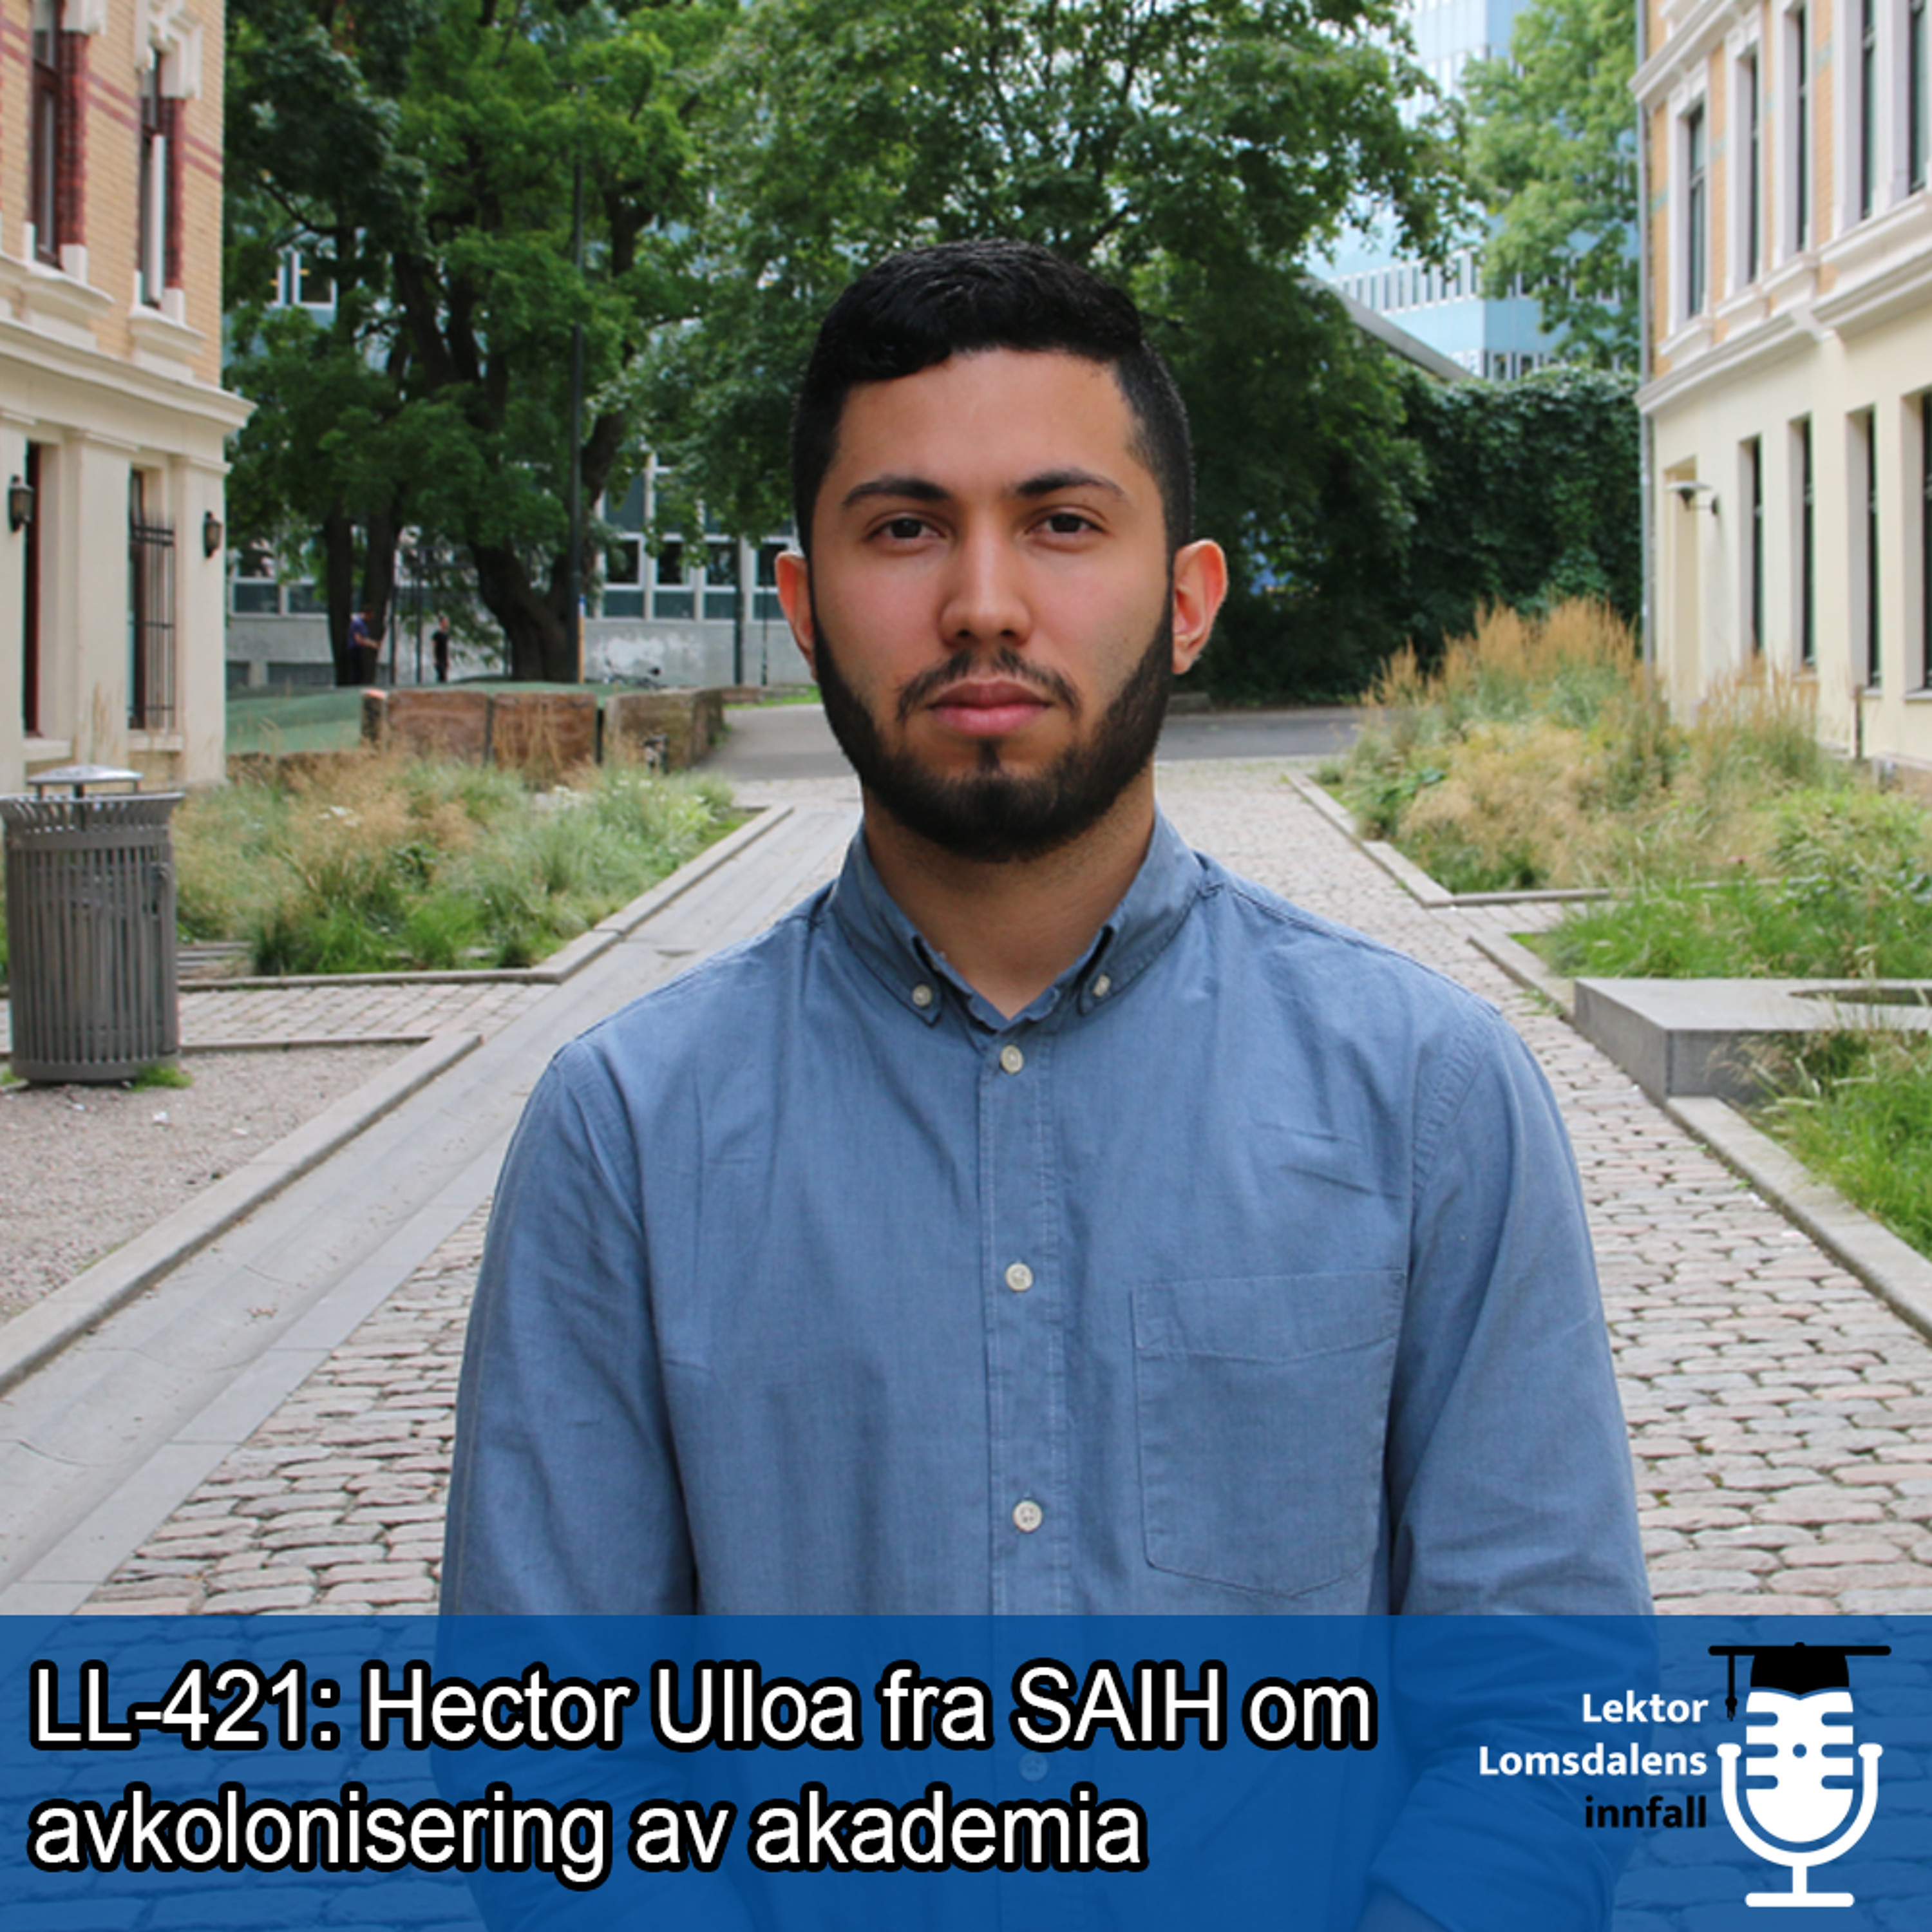 LL-421: Hector Ulloa fra SAIH om avkolonisering av akademia